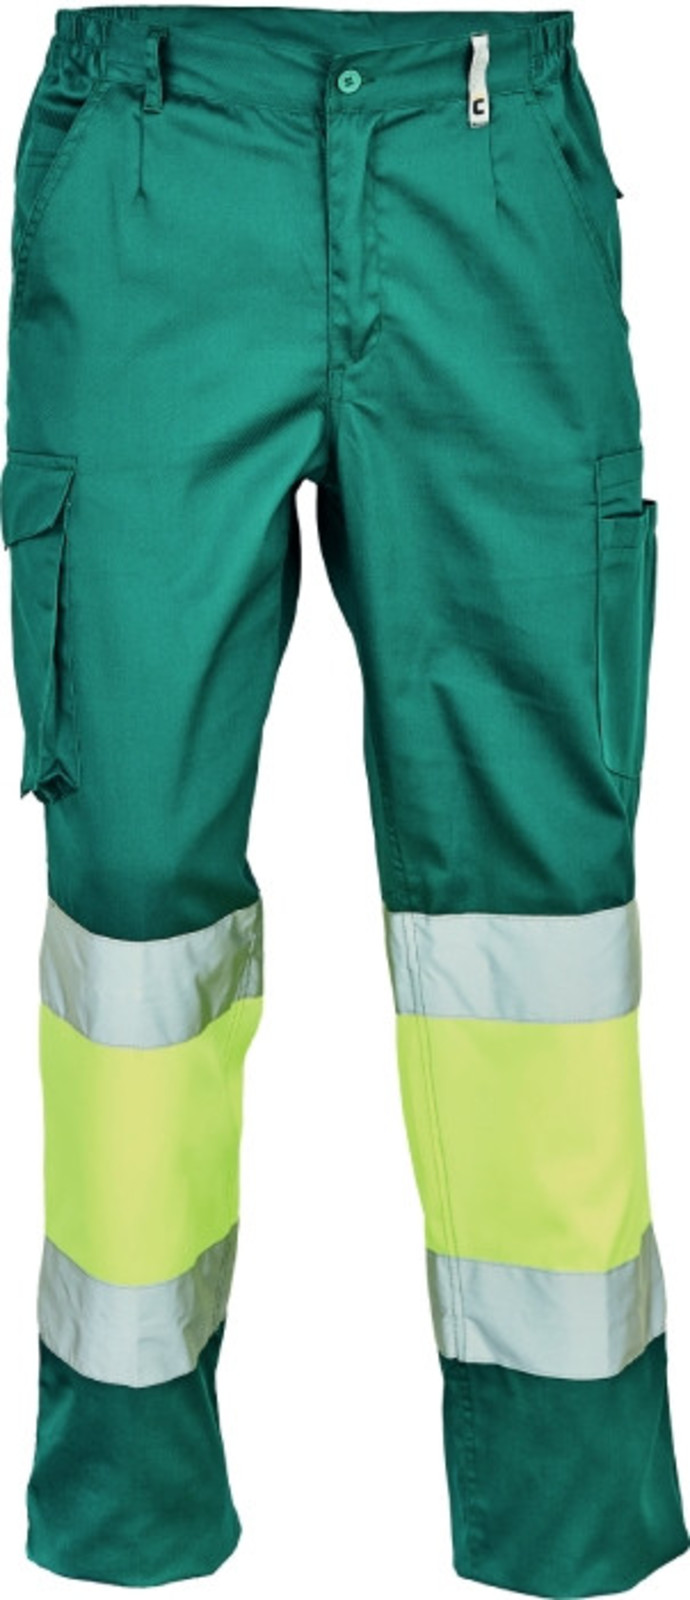 Pracovné reflexné nohavice Cerva Ciudades Bilbao HV - veľkosť: 52, farba: zelená/žltá